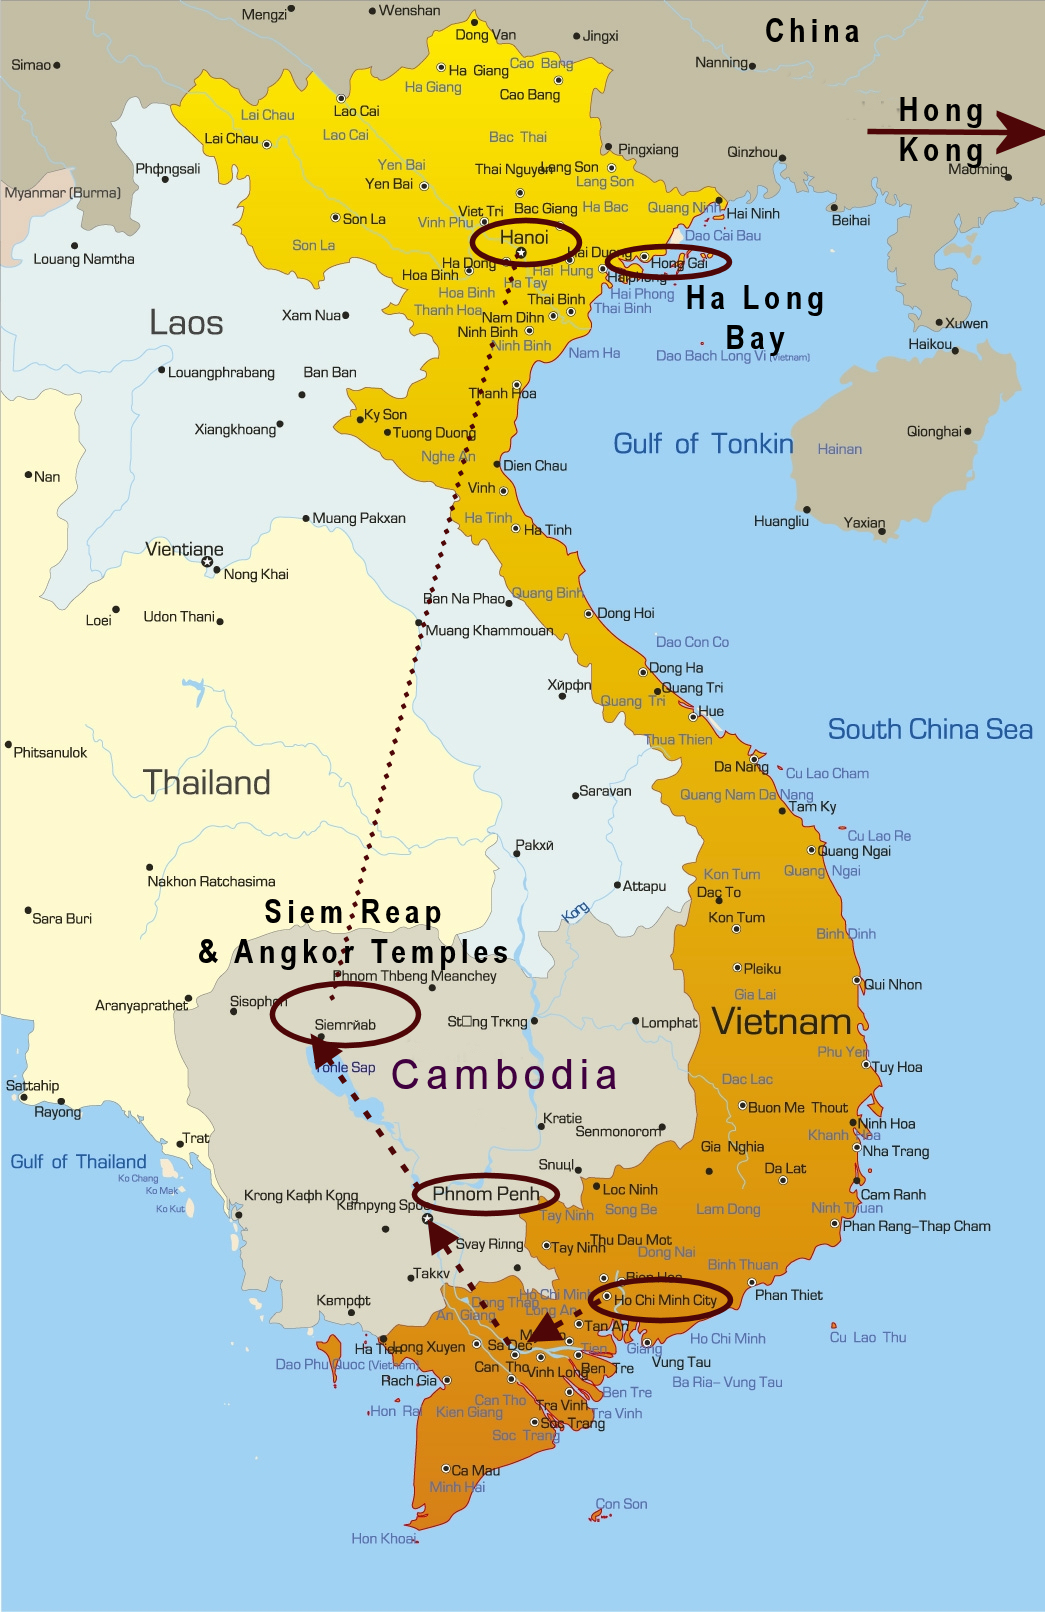 Vietnam/Cambodia Map